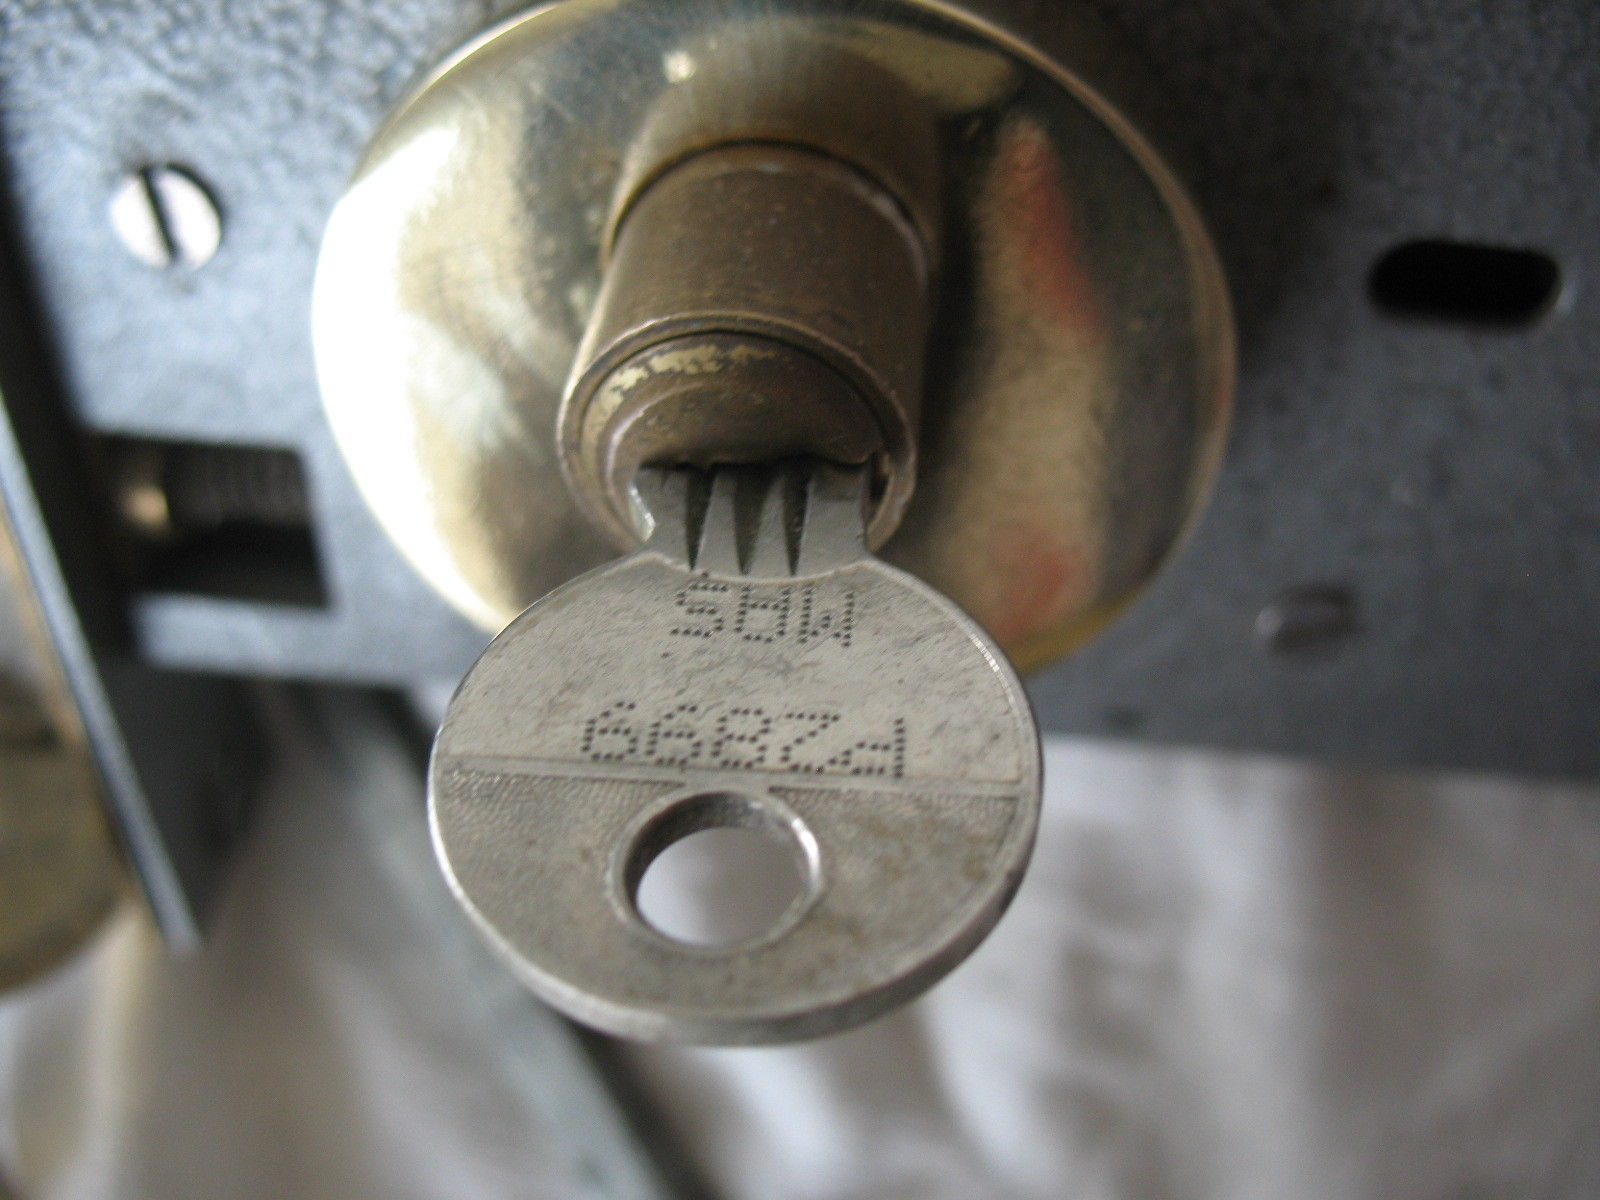 Old reclaim LAIDLAW door lock & key with solid brass oval door handles